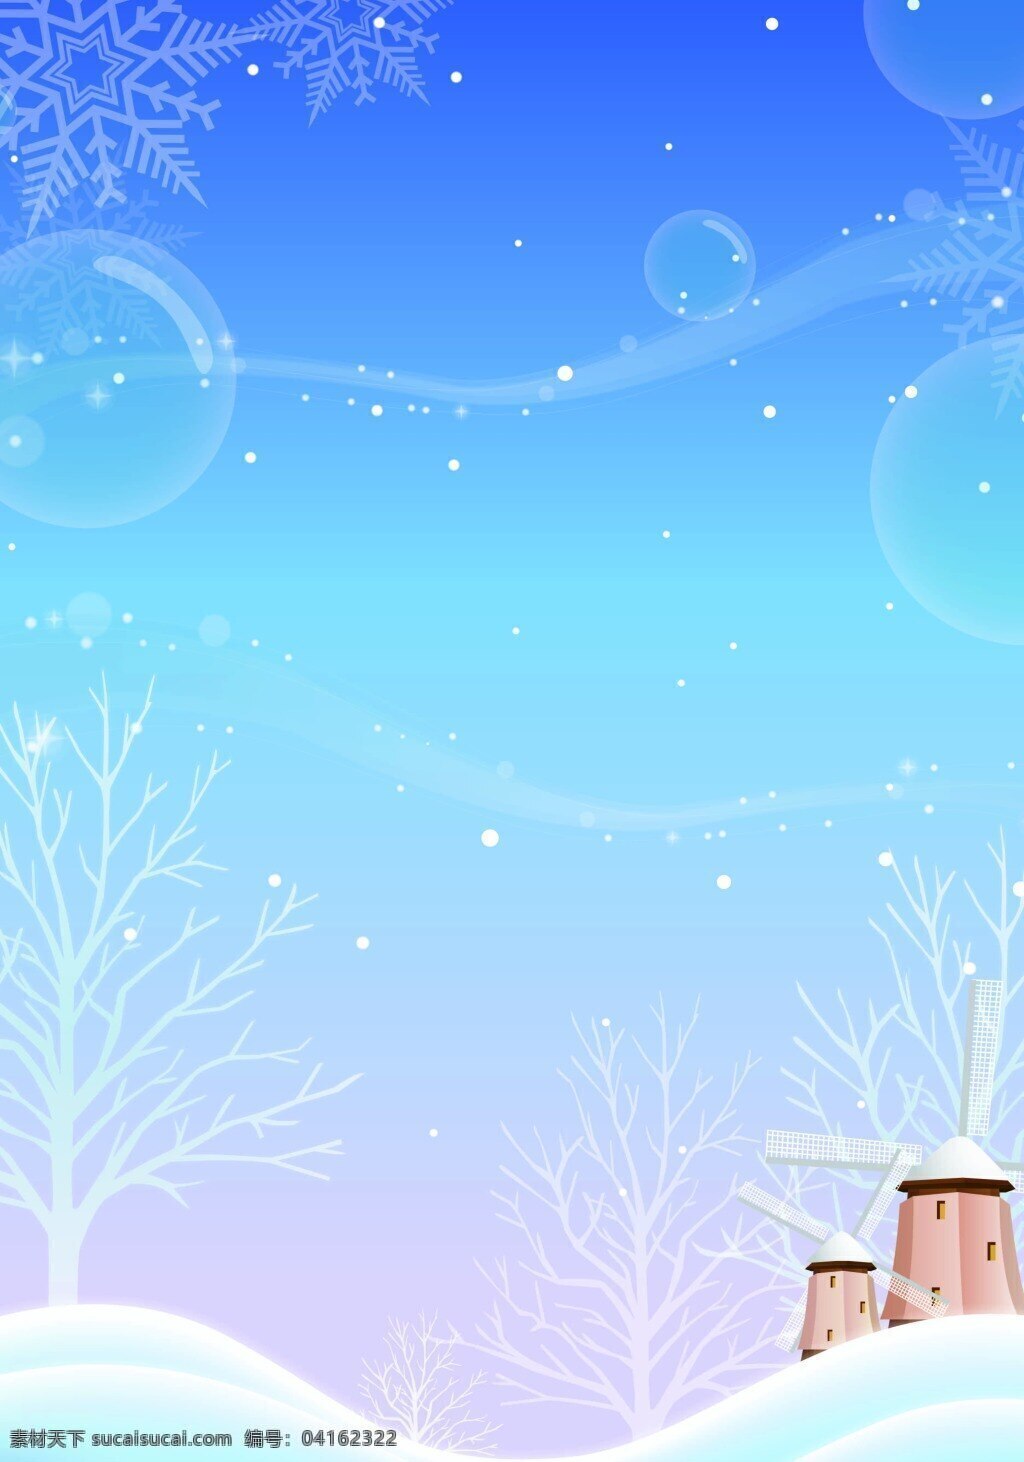 背景 插画 房屋 卡通 蓝色 圣诞节 圣诞树 矢量 夜景 手绘 童趣 雪景